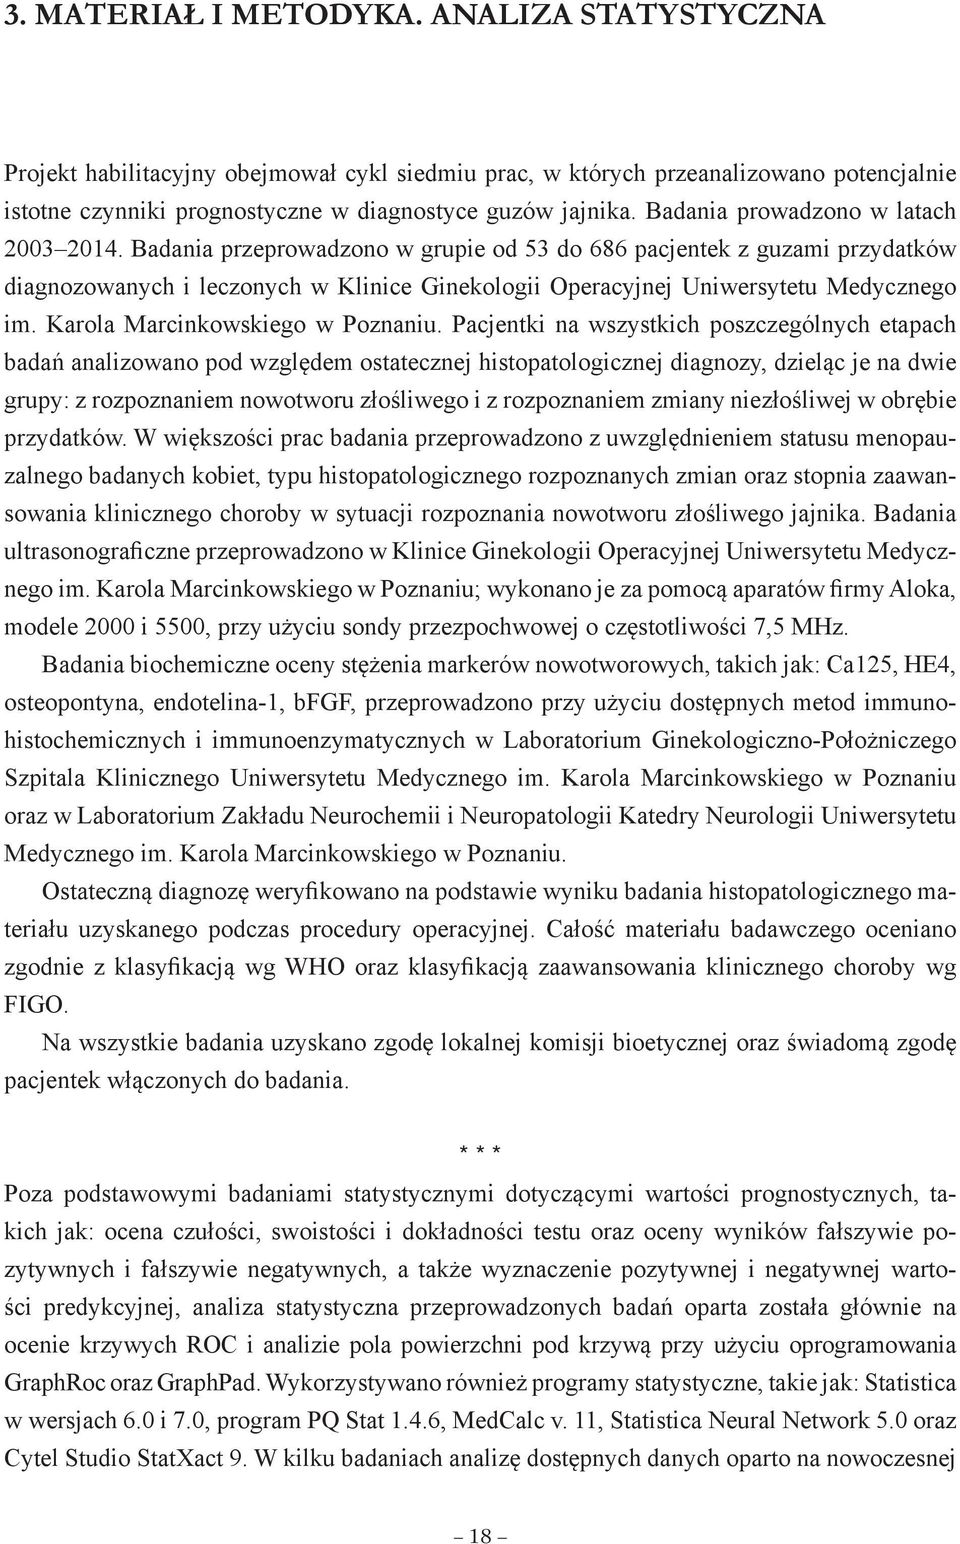 Badania przeprowadzono w grupie od 53 do 686 pacjentek z guzami przydatków diagnozowanych i leczonych w Klinice Ginekologii Operacyjnej Uniwersytetu Medycznego im. Karola Marcinkowskiego w Poznaniu.